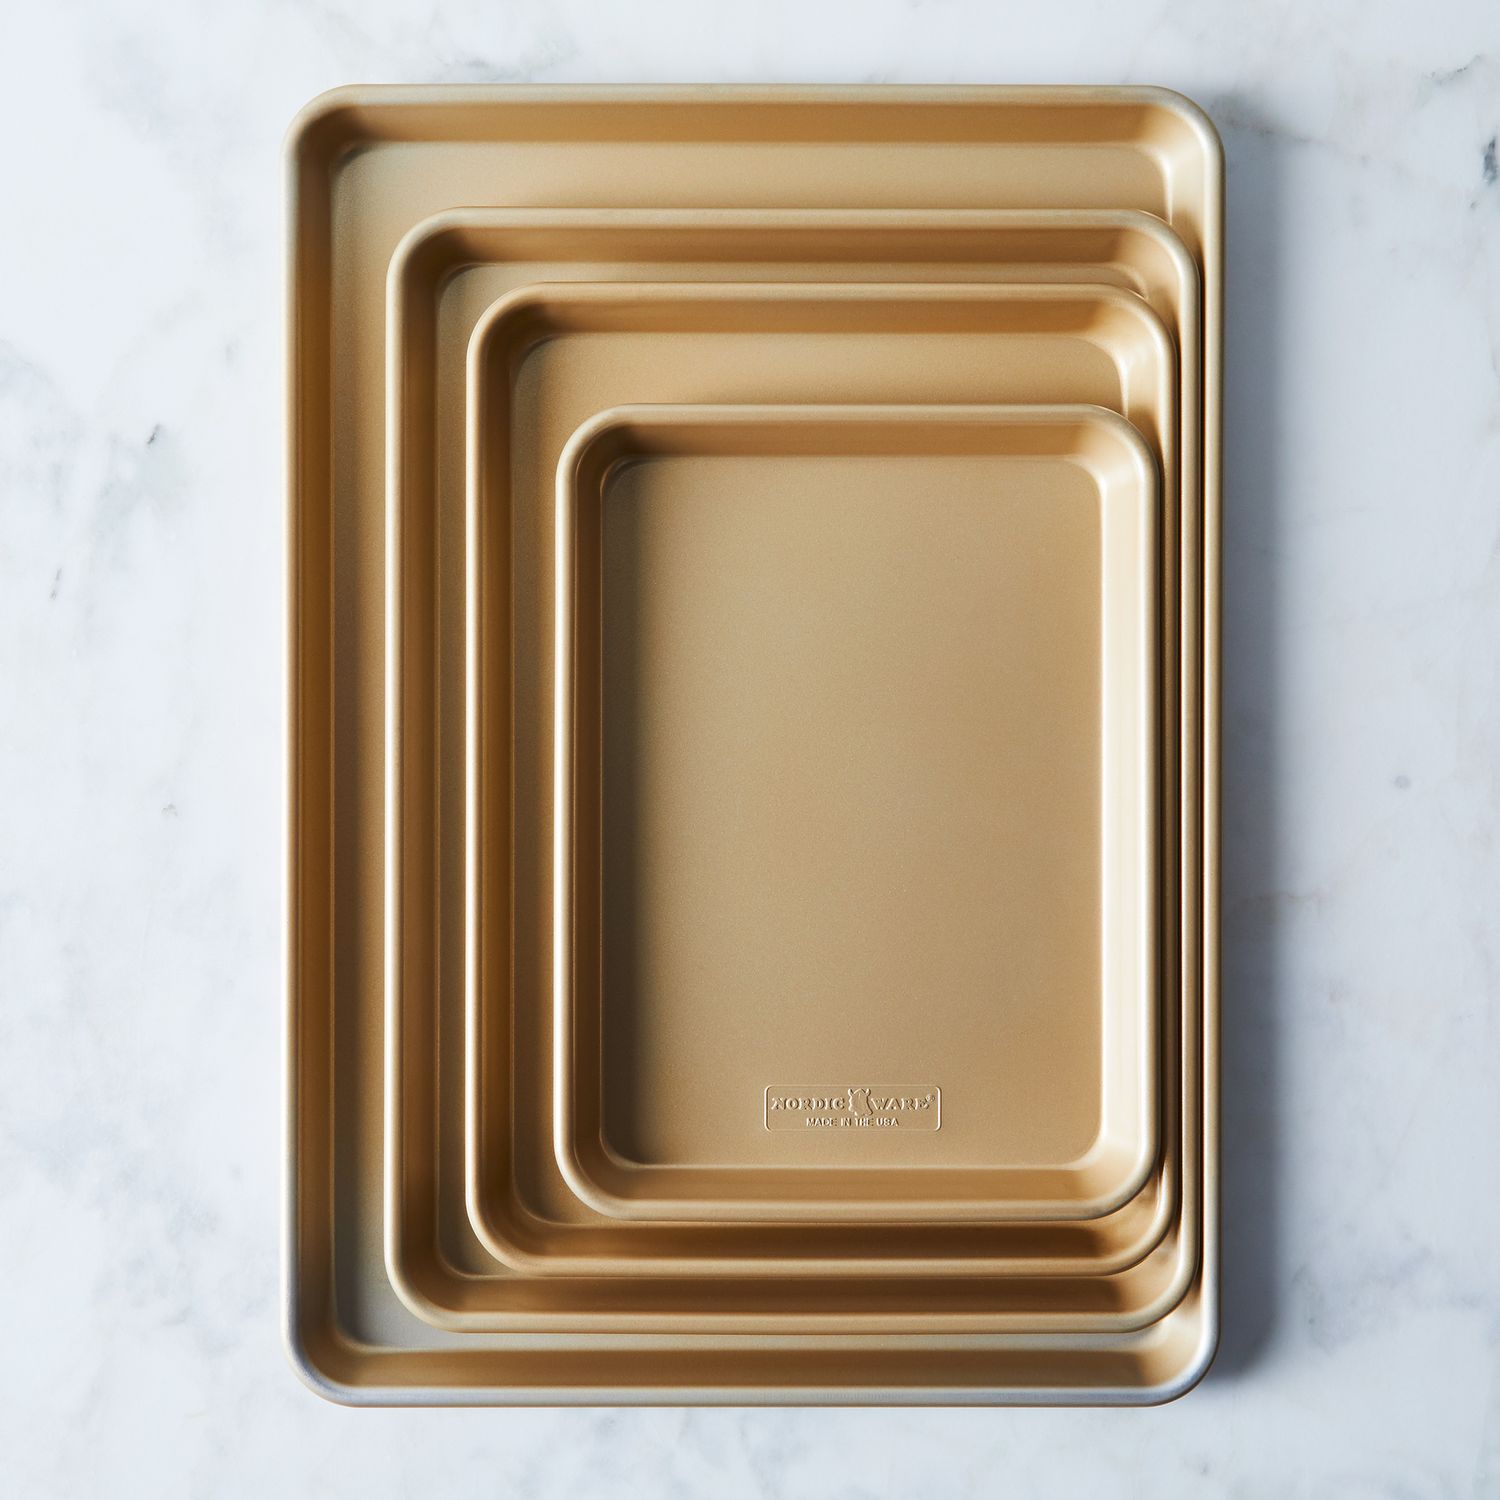 Nordic Ware Treat Nonstick 9x13 Rectangular Baking Pan - Gold, 1 - Kroger